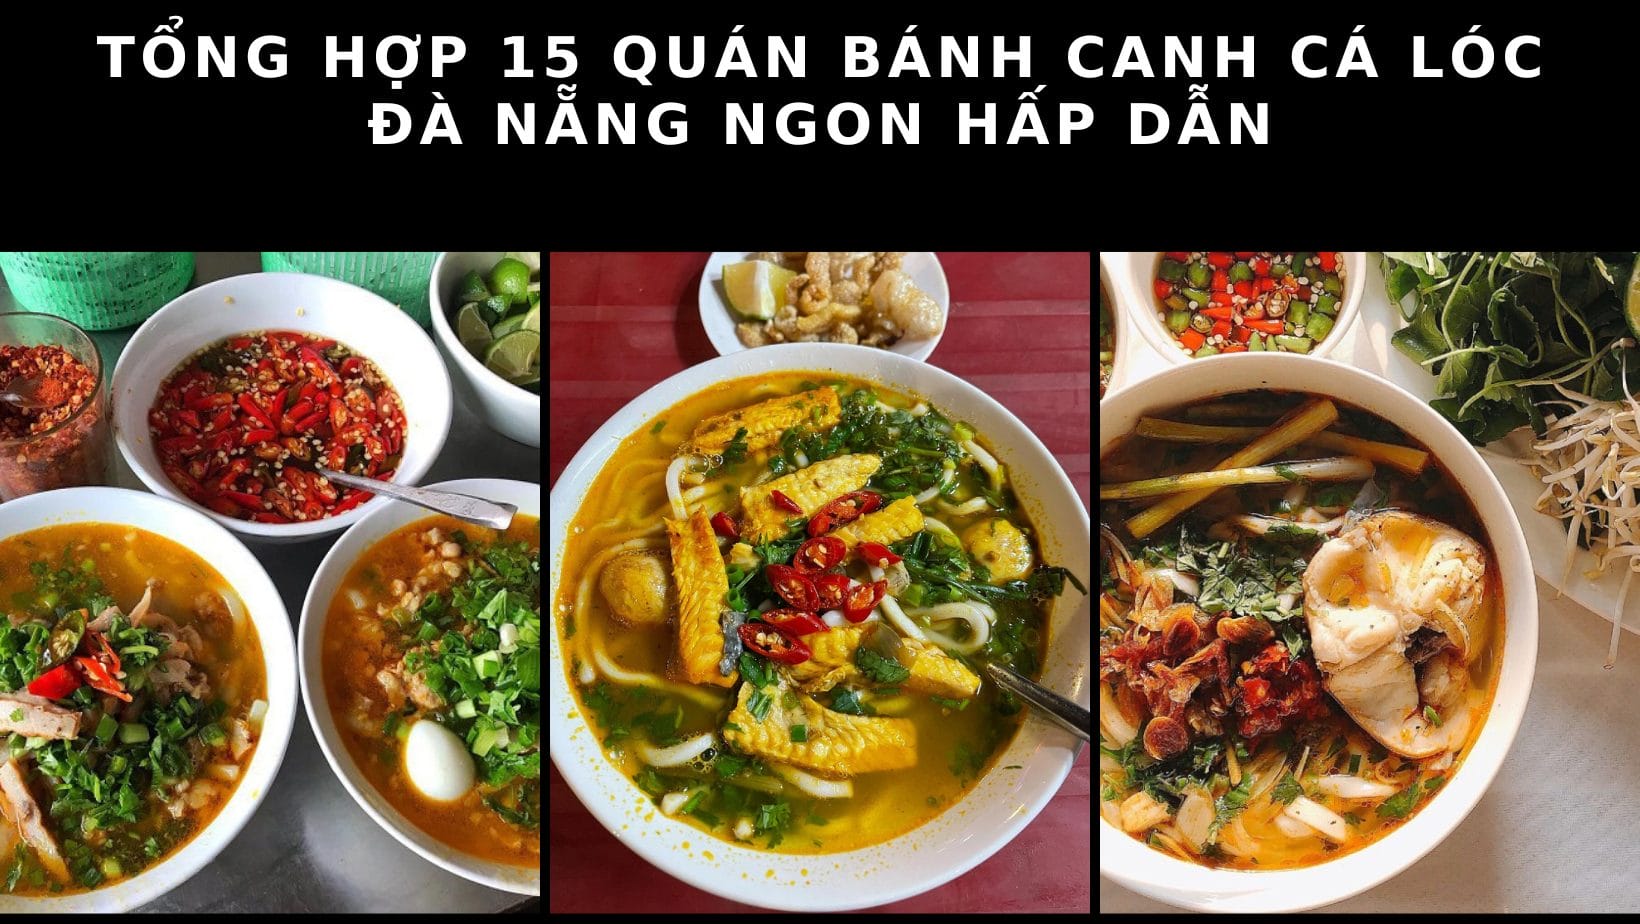 Tổng hợp 15 quán Bánh canh cá lóc Đà Nẵng ngon hấp dẫn